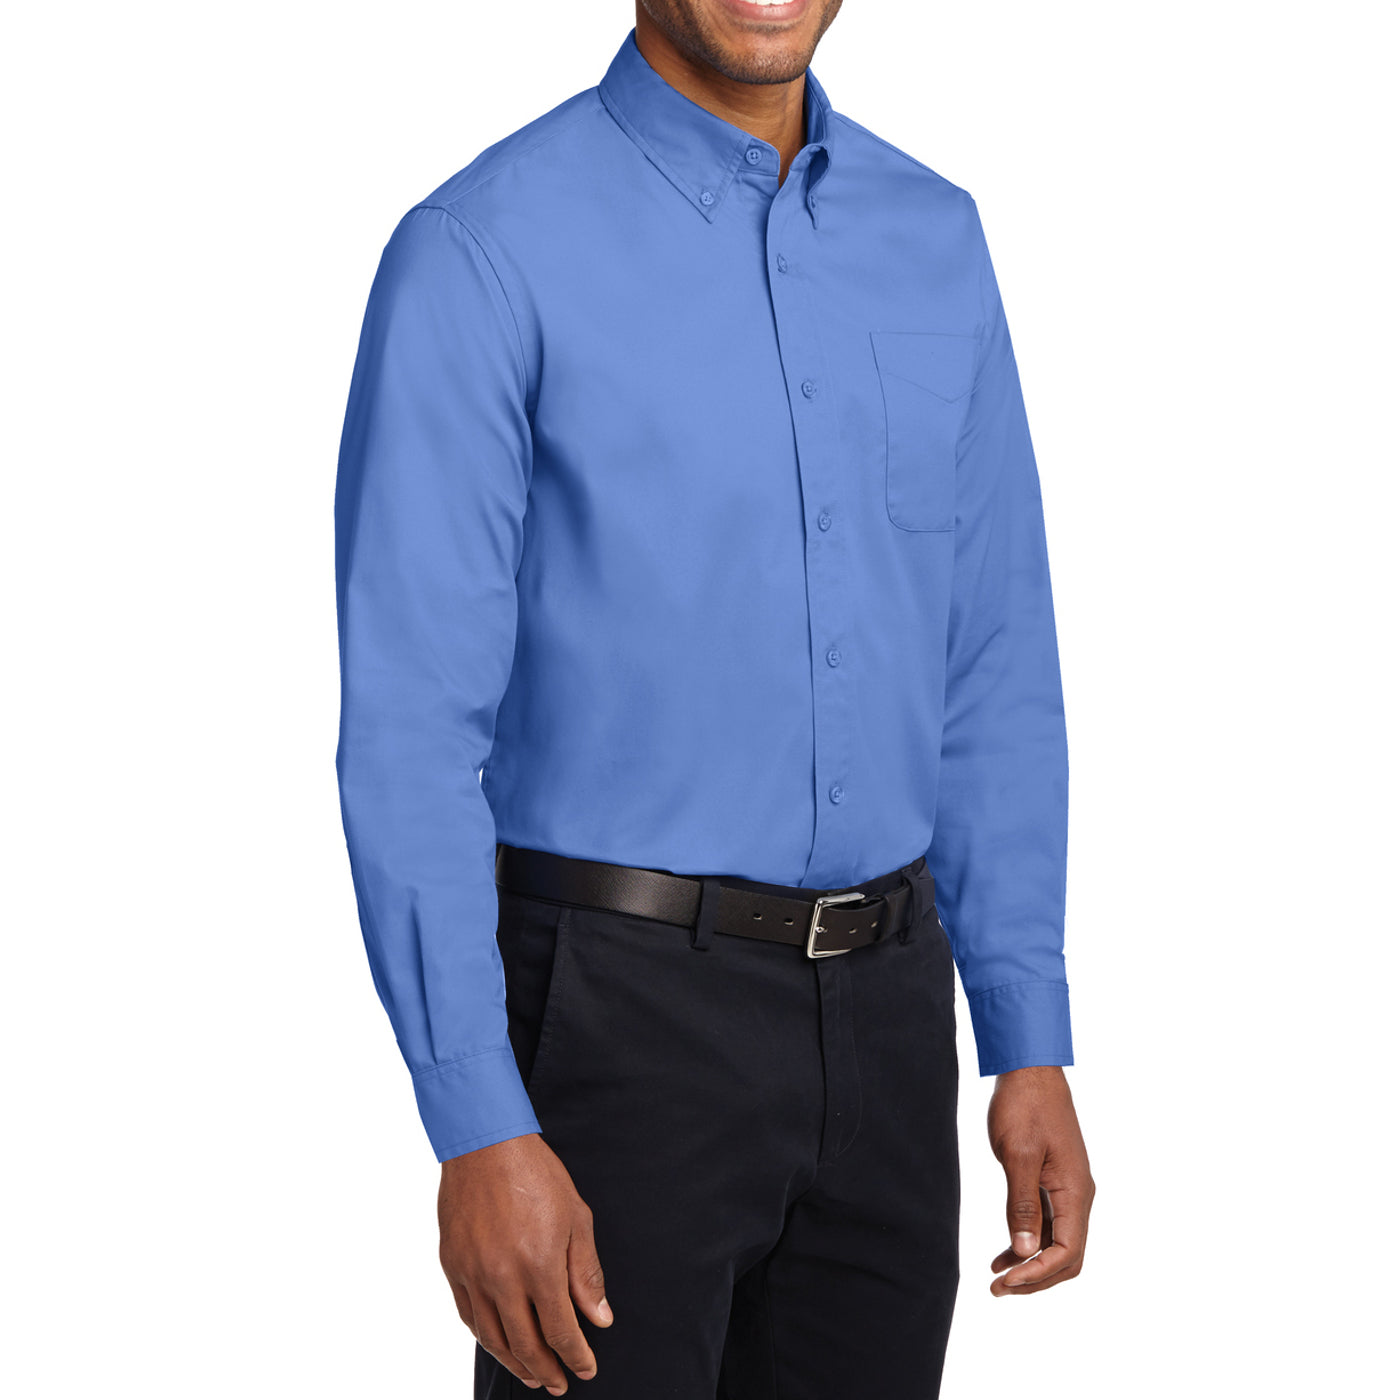 Men's Long Sleeve Easy Care Shirt - Ultramarine Blue - Side